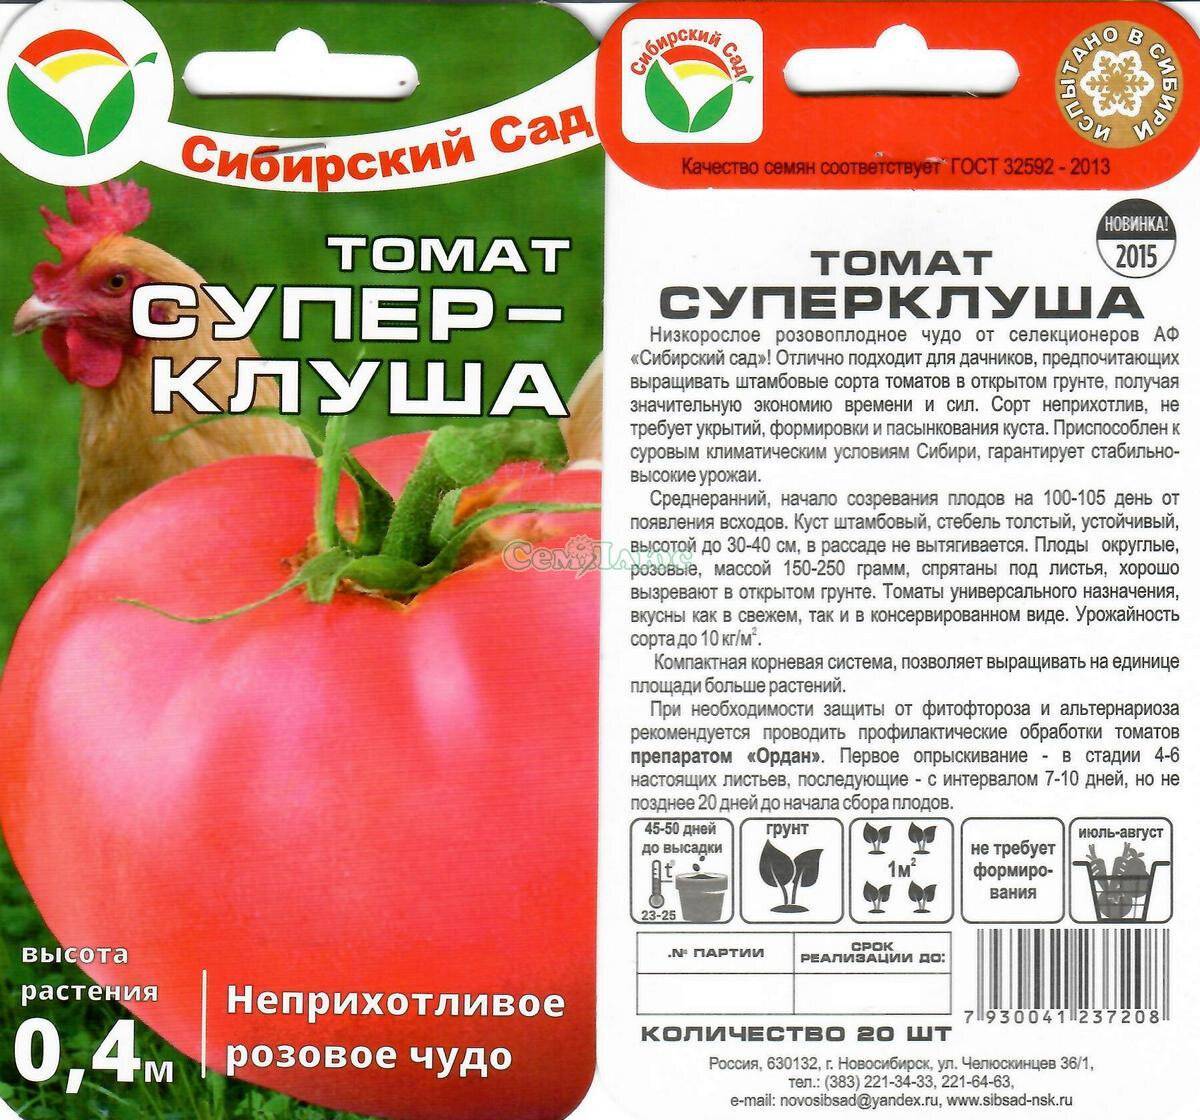 Томат апельсин: описание сорта помидор, фото плодов, отзывы дачников и особенности выращивания